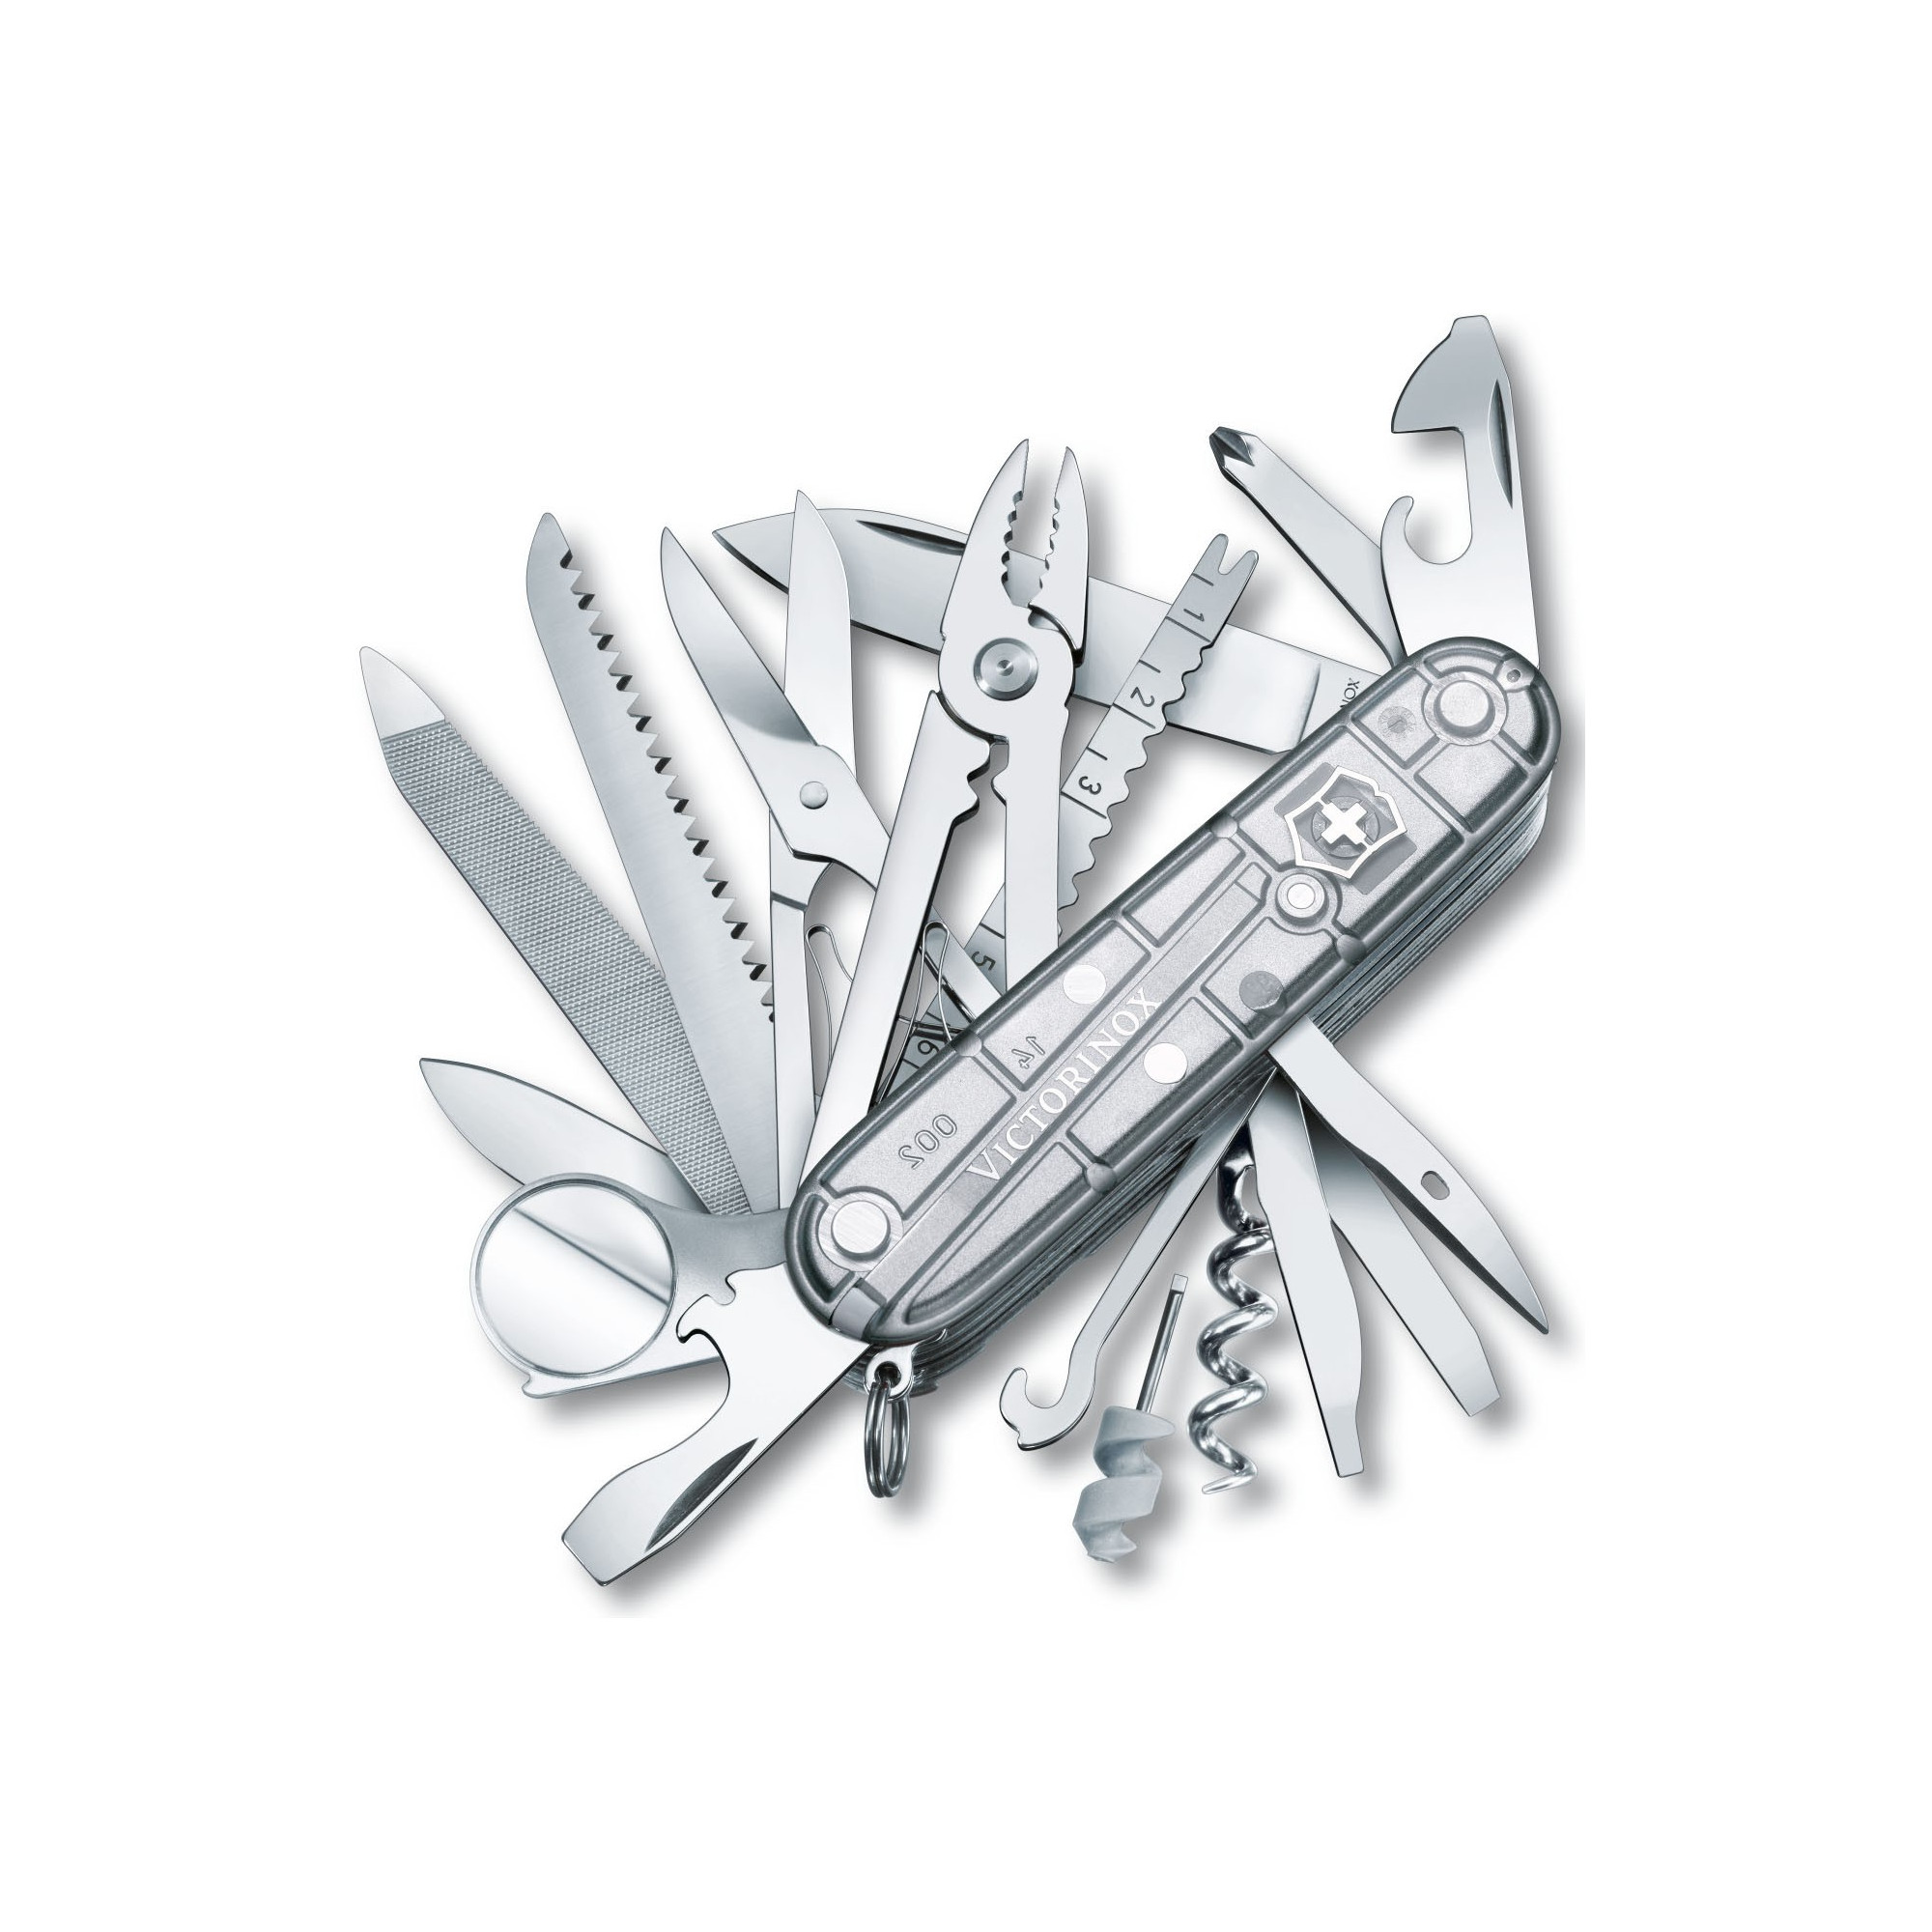 Couteau multi-fonctions Swisschamp Silvertech